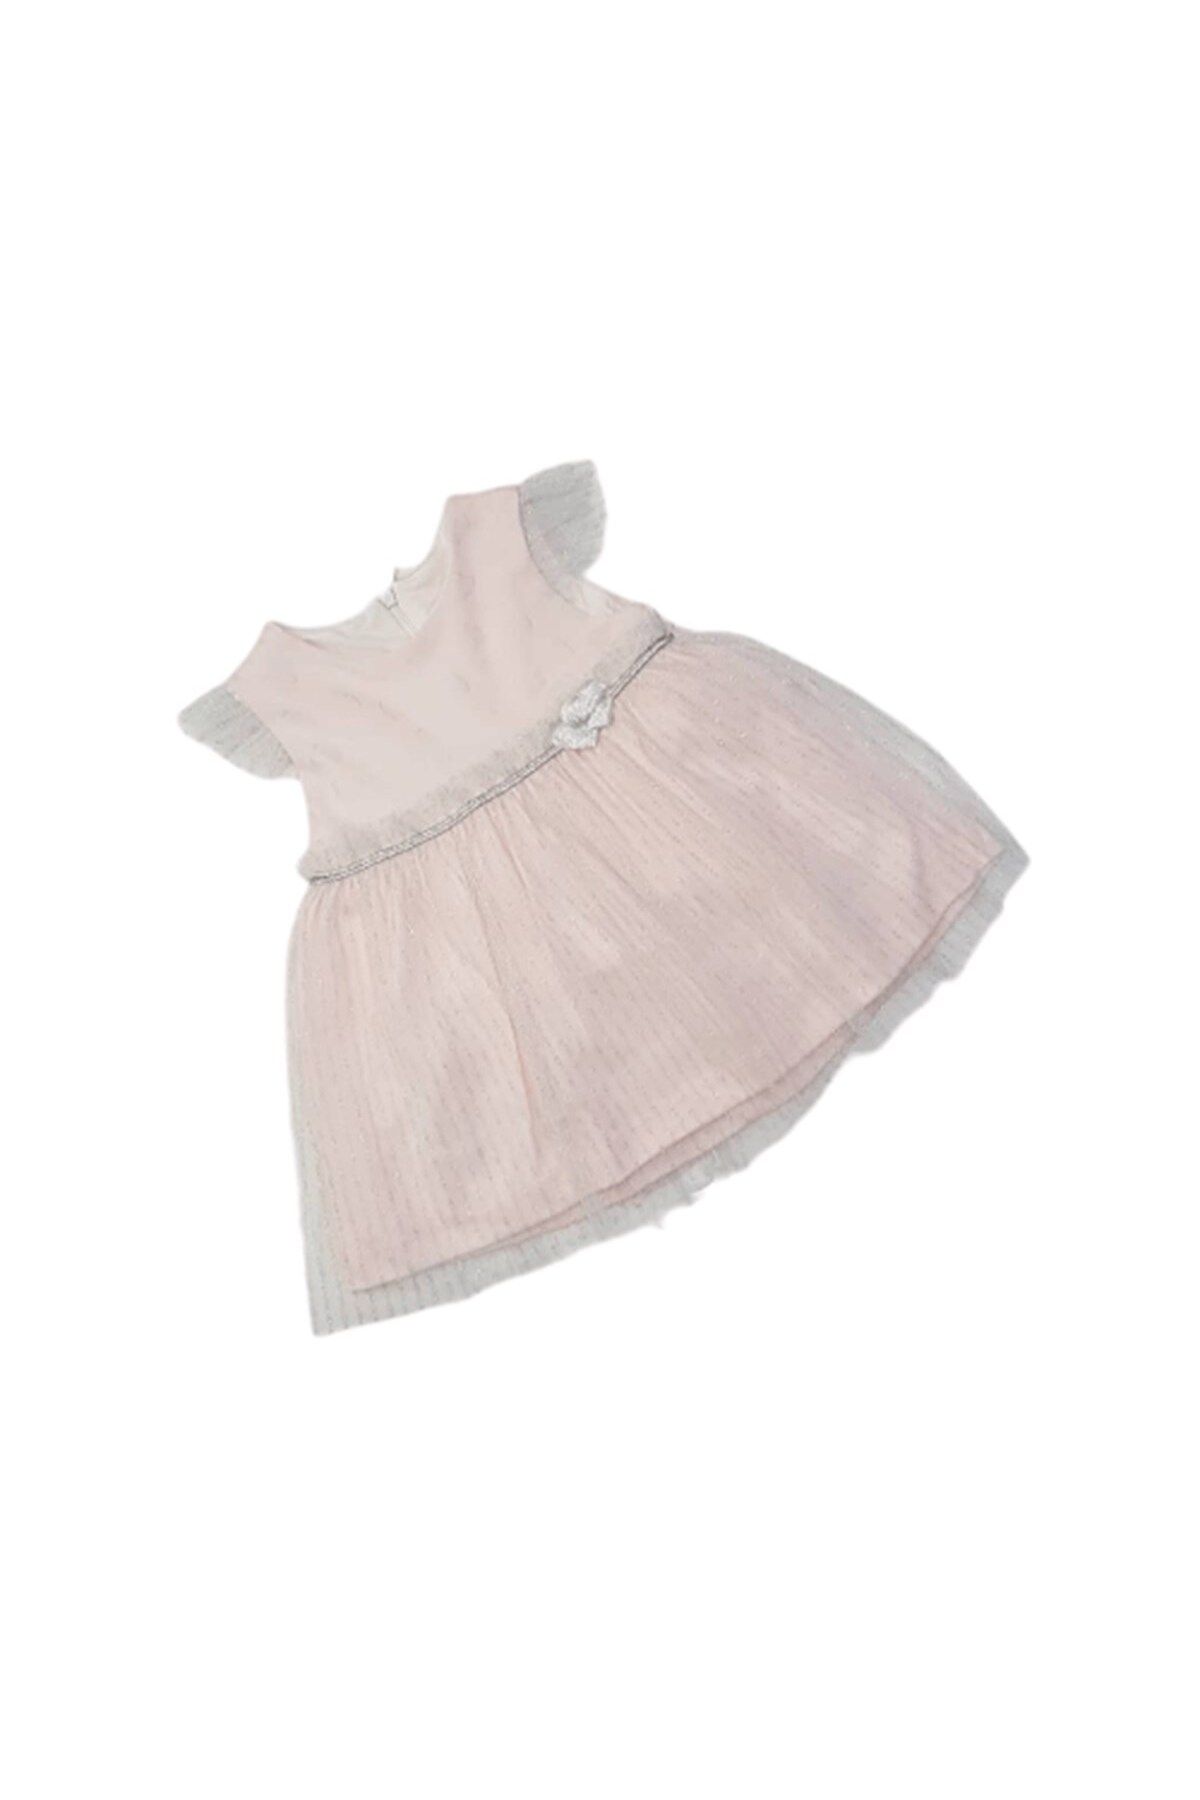 Genel Markalar Mymio Baby 2586 Kız Bebek Kalpli Tütülü Penye Elbise